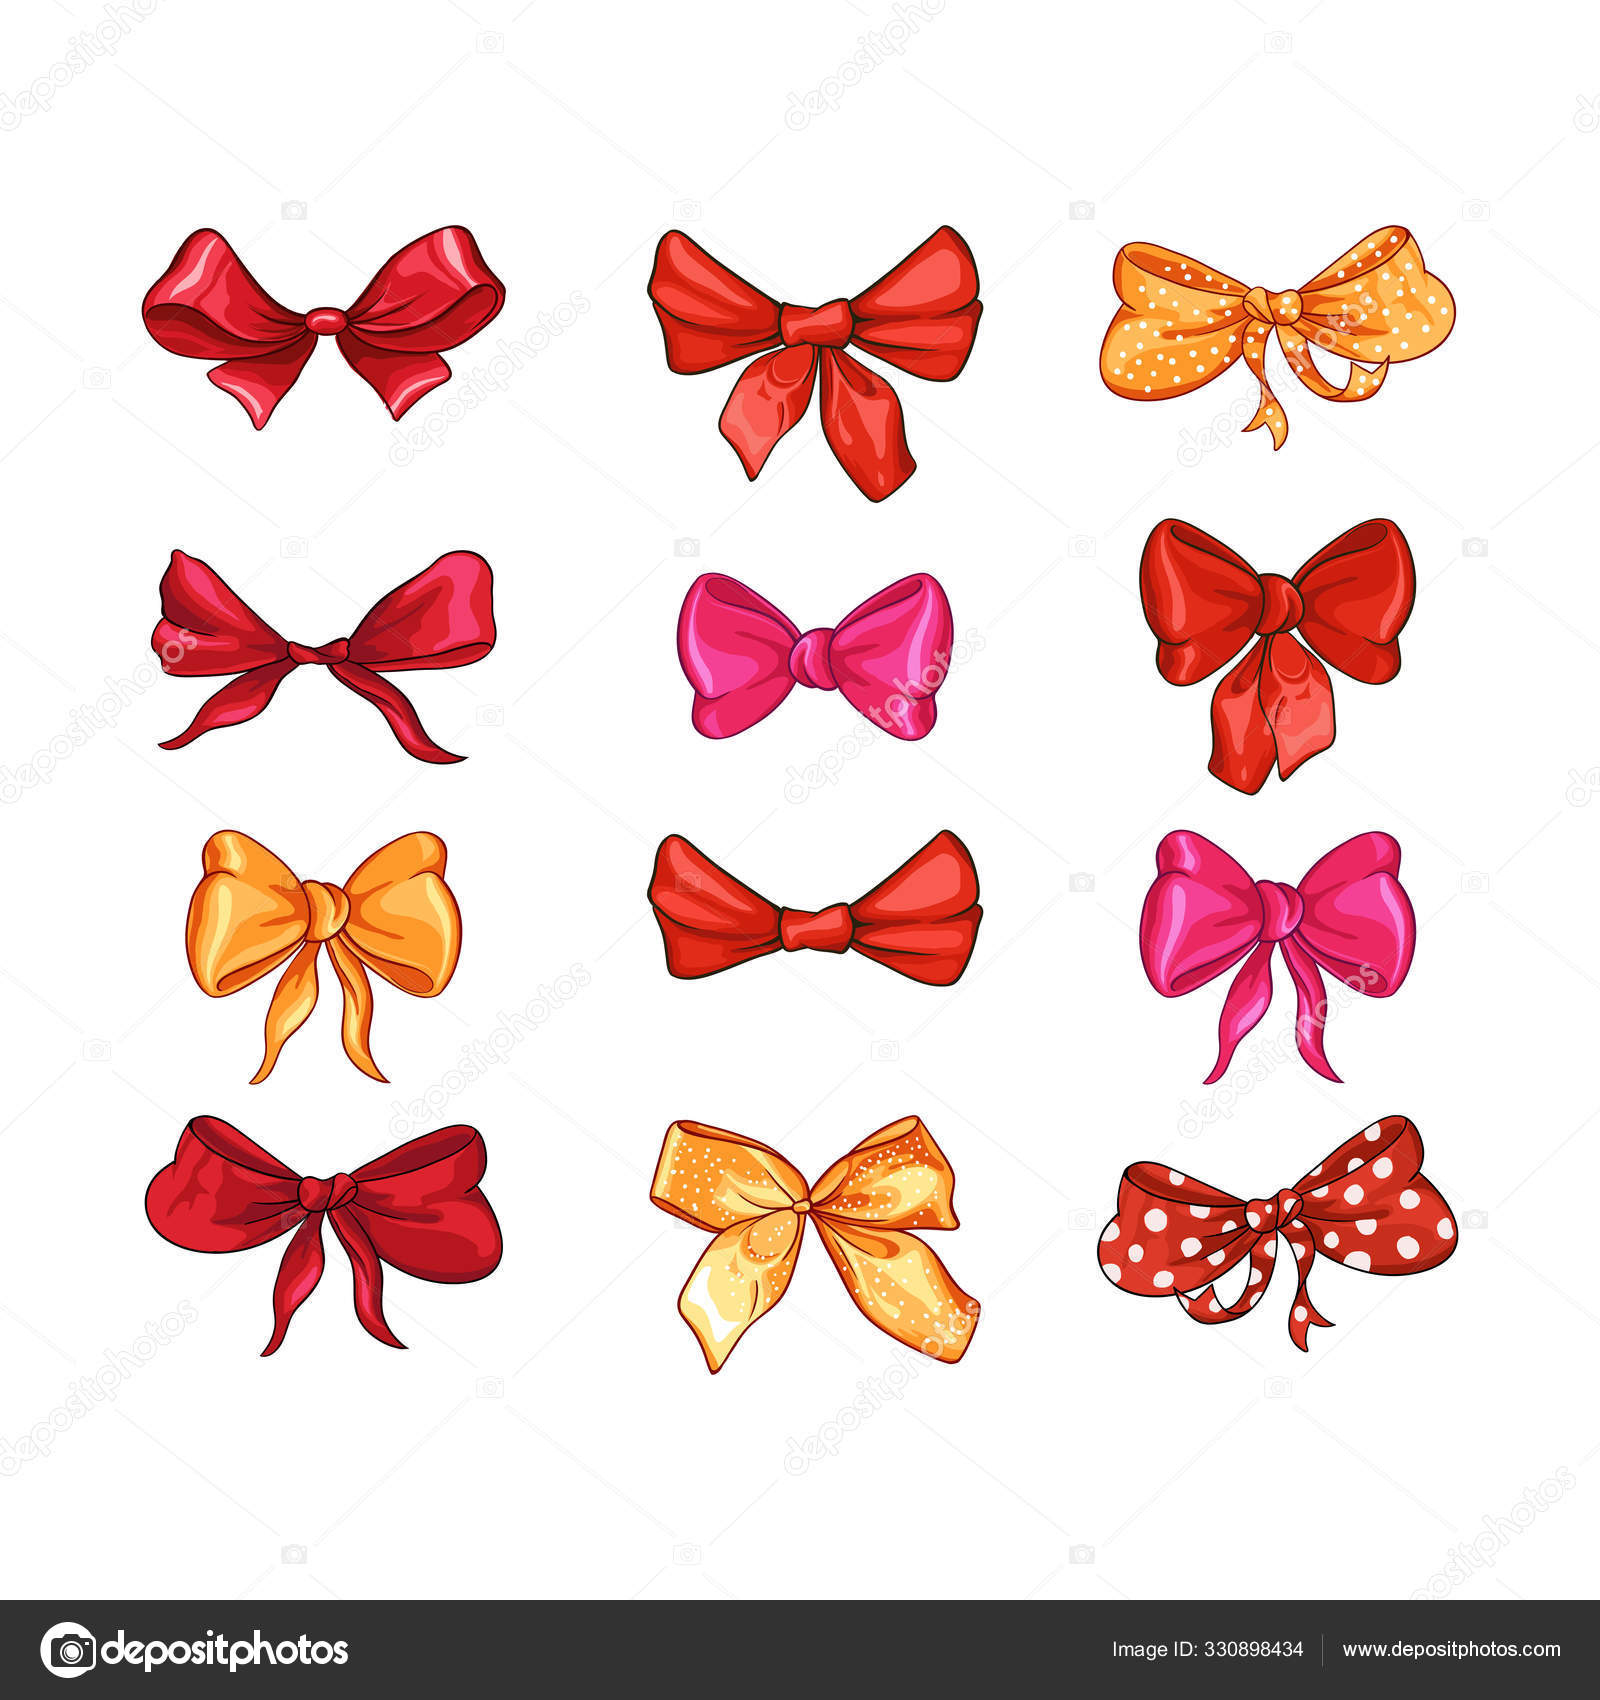 Decoration Ribbon Cute Ribbon, Pink, Red, Polka Dot, Bow Tie